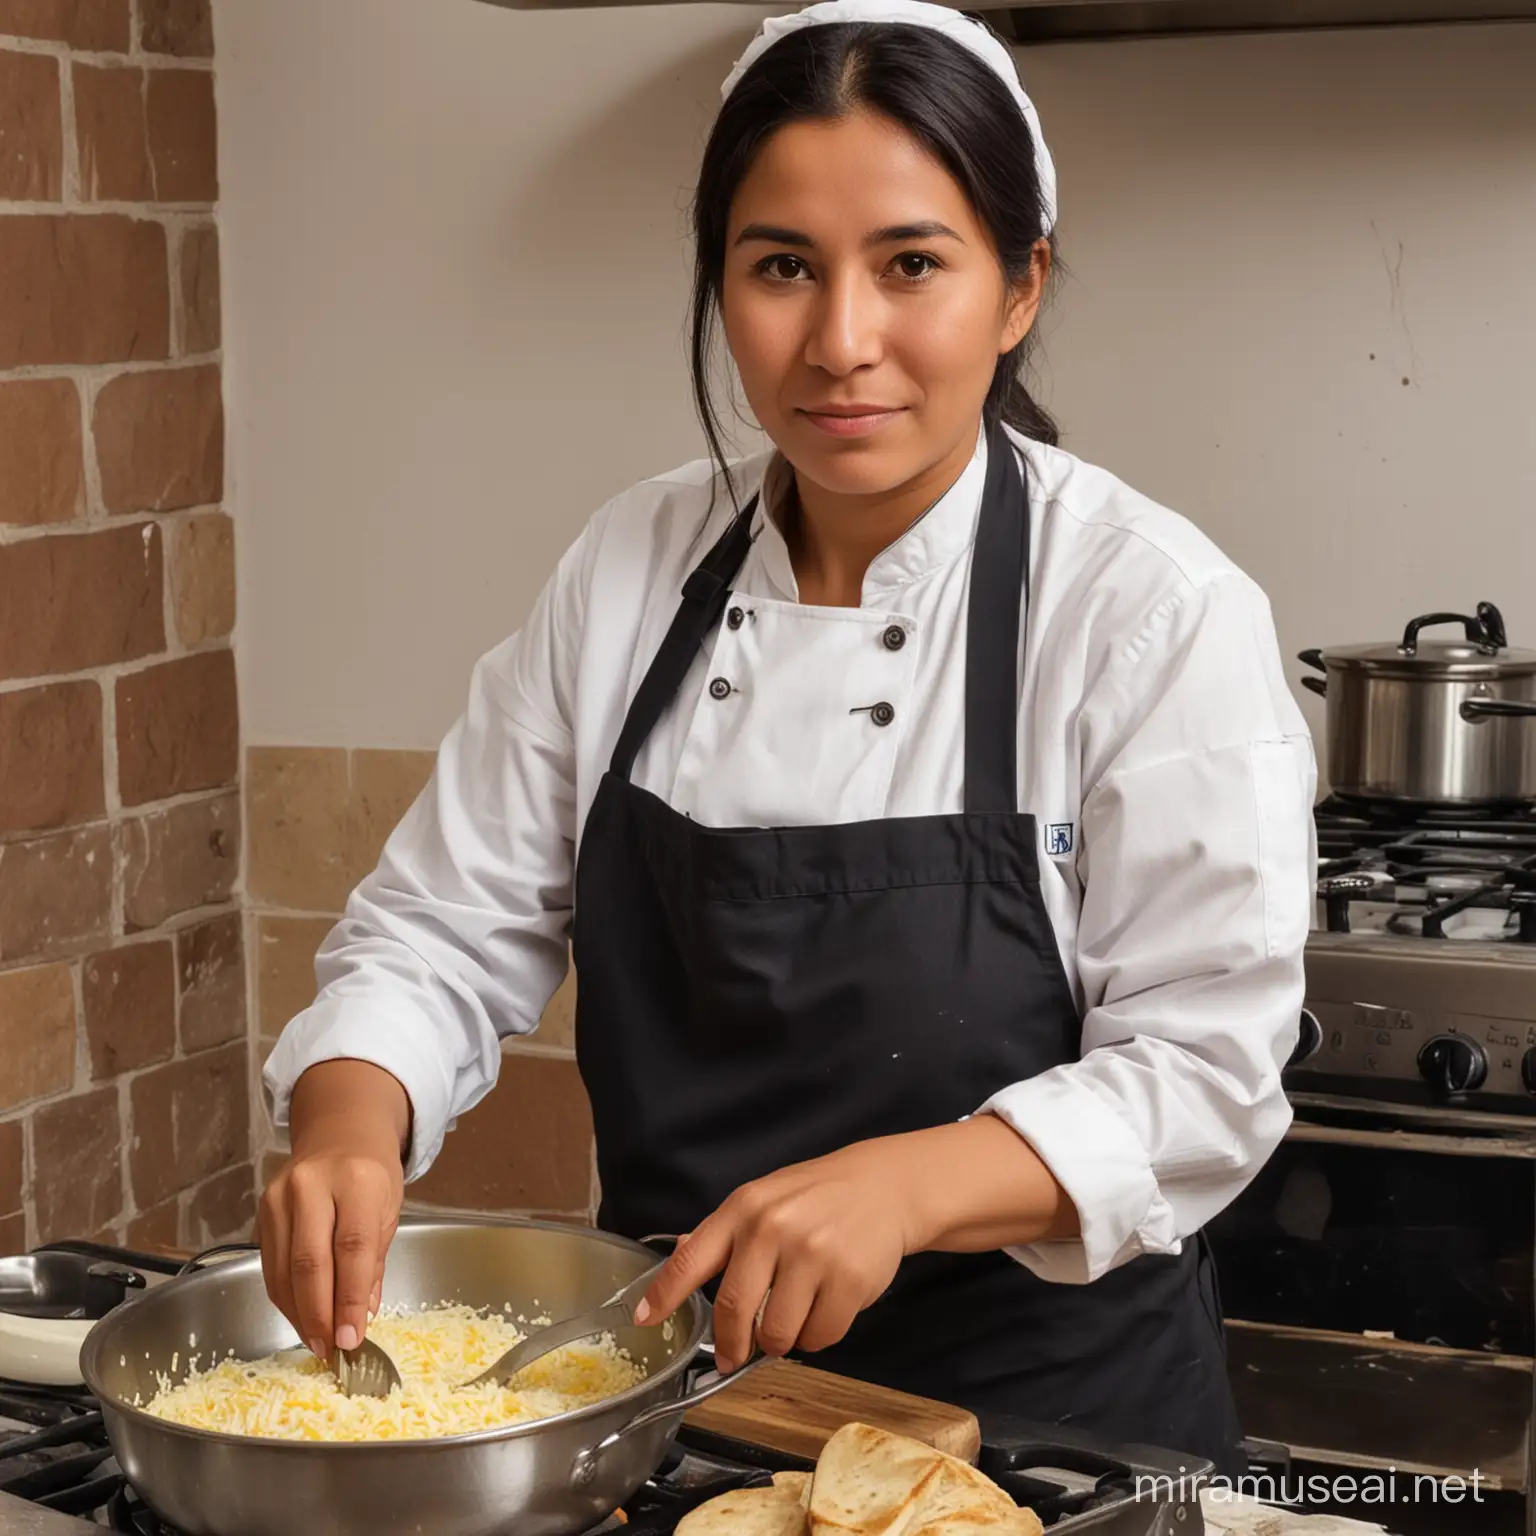 Mujer profesional de Arequipa de edad entre 30 años, cocina regularmente ya que trabaja, debe ser una imagen real